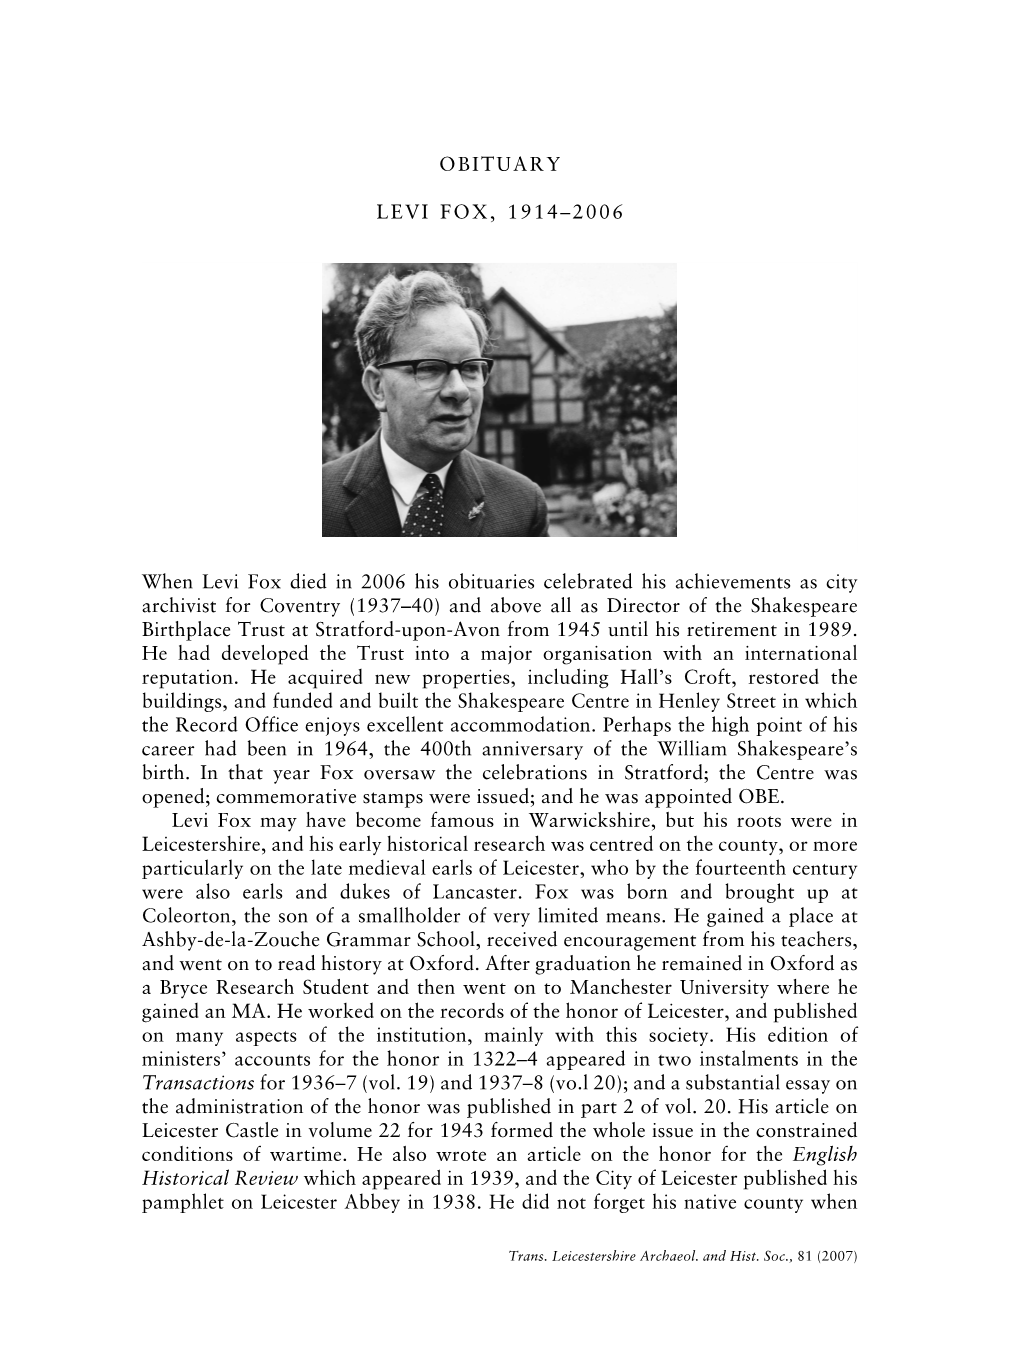 Obituary: Levi Fox 1914-2006 Pp.171-172